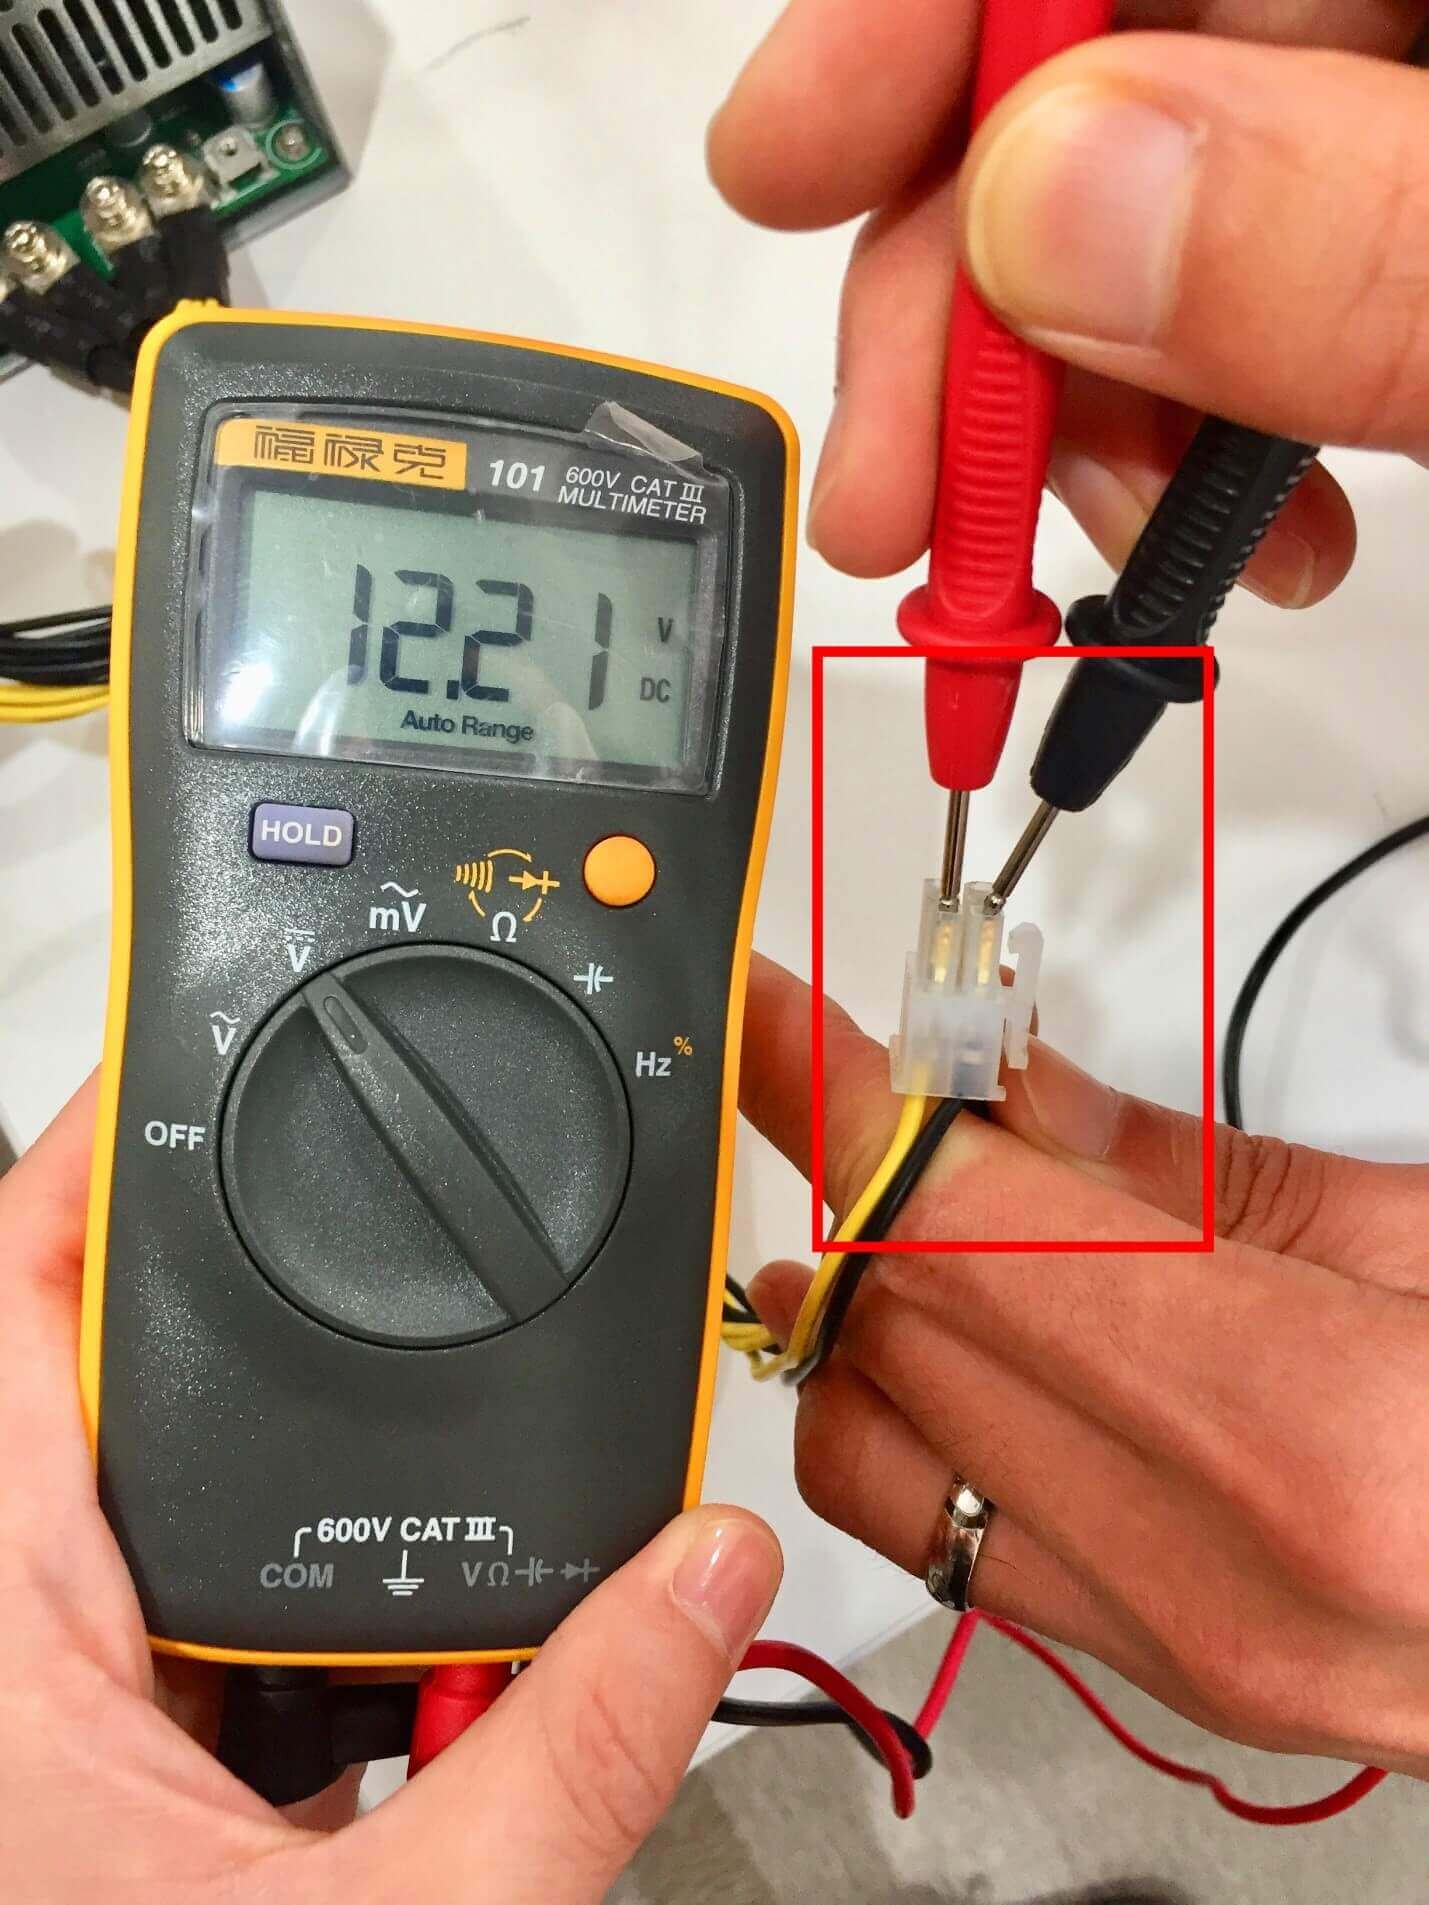 Как проводить измерения электронным тестером (мультиметром)